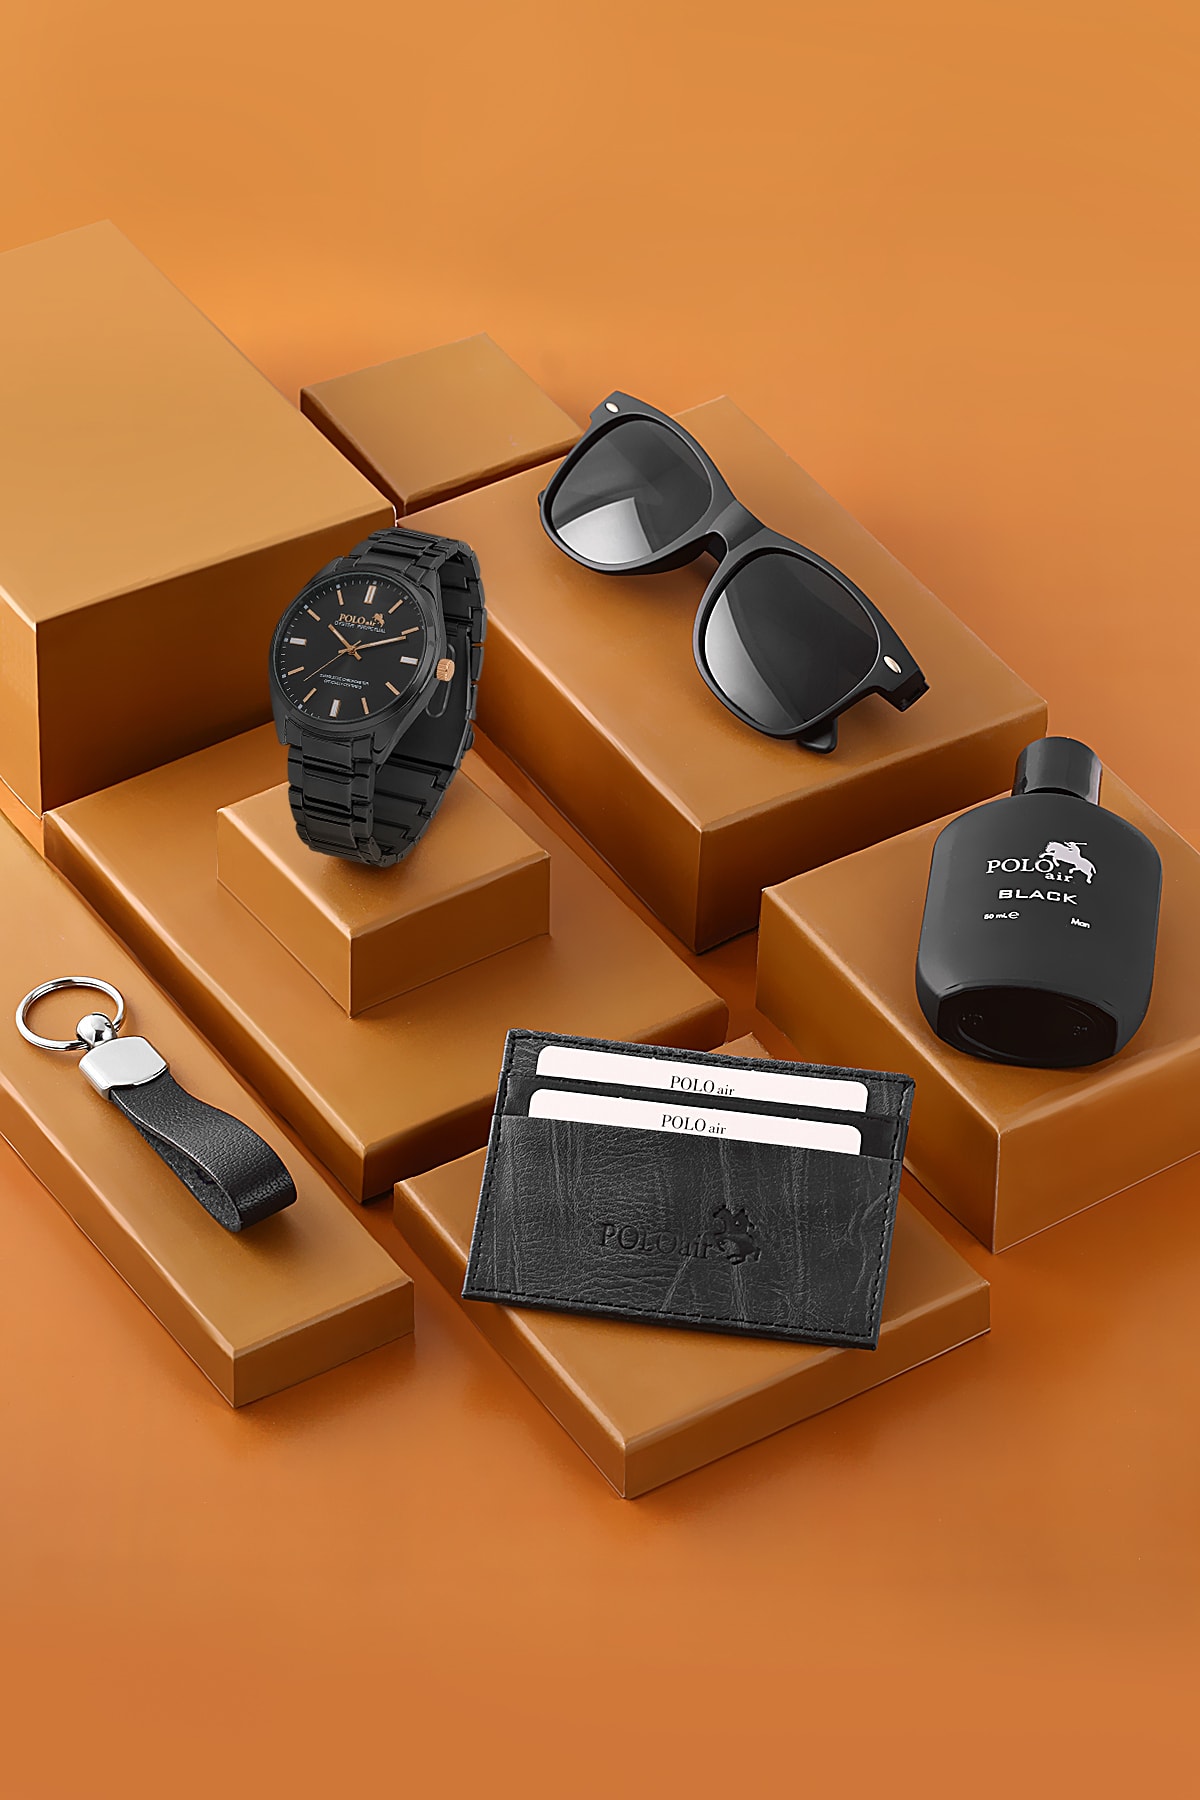 Polo Air Premium Set Kombin Erkek Kol Saati Parfüm Gözlük Kartlık Anahtarlık Hediyelik Kutusunda